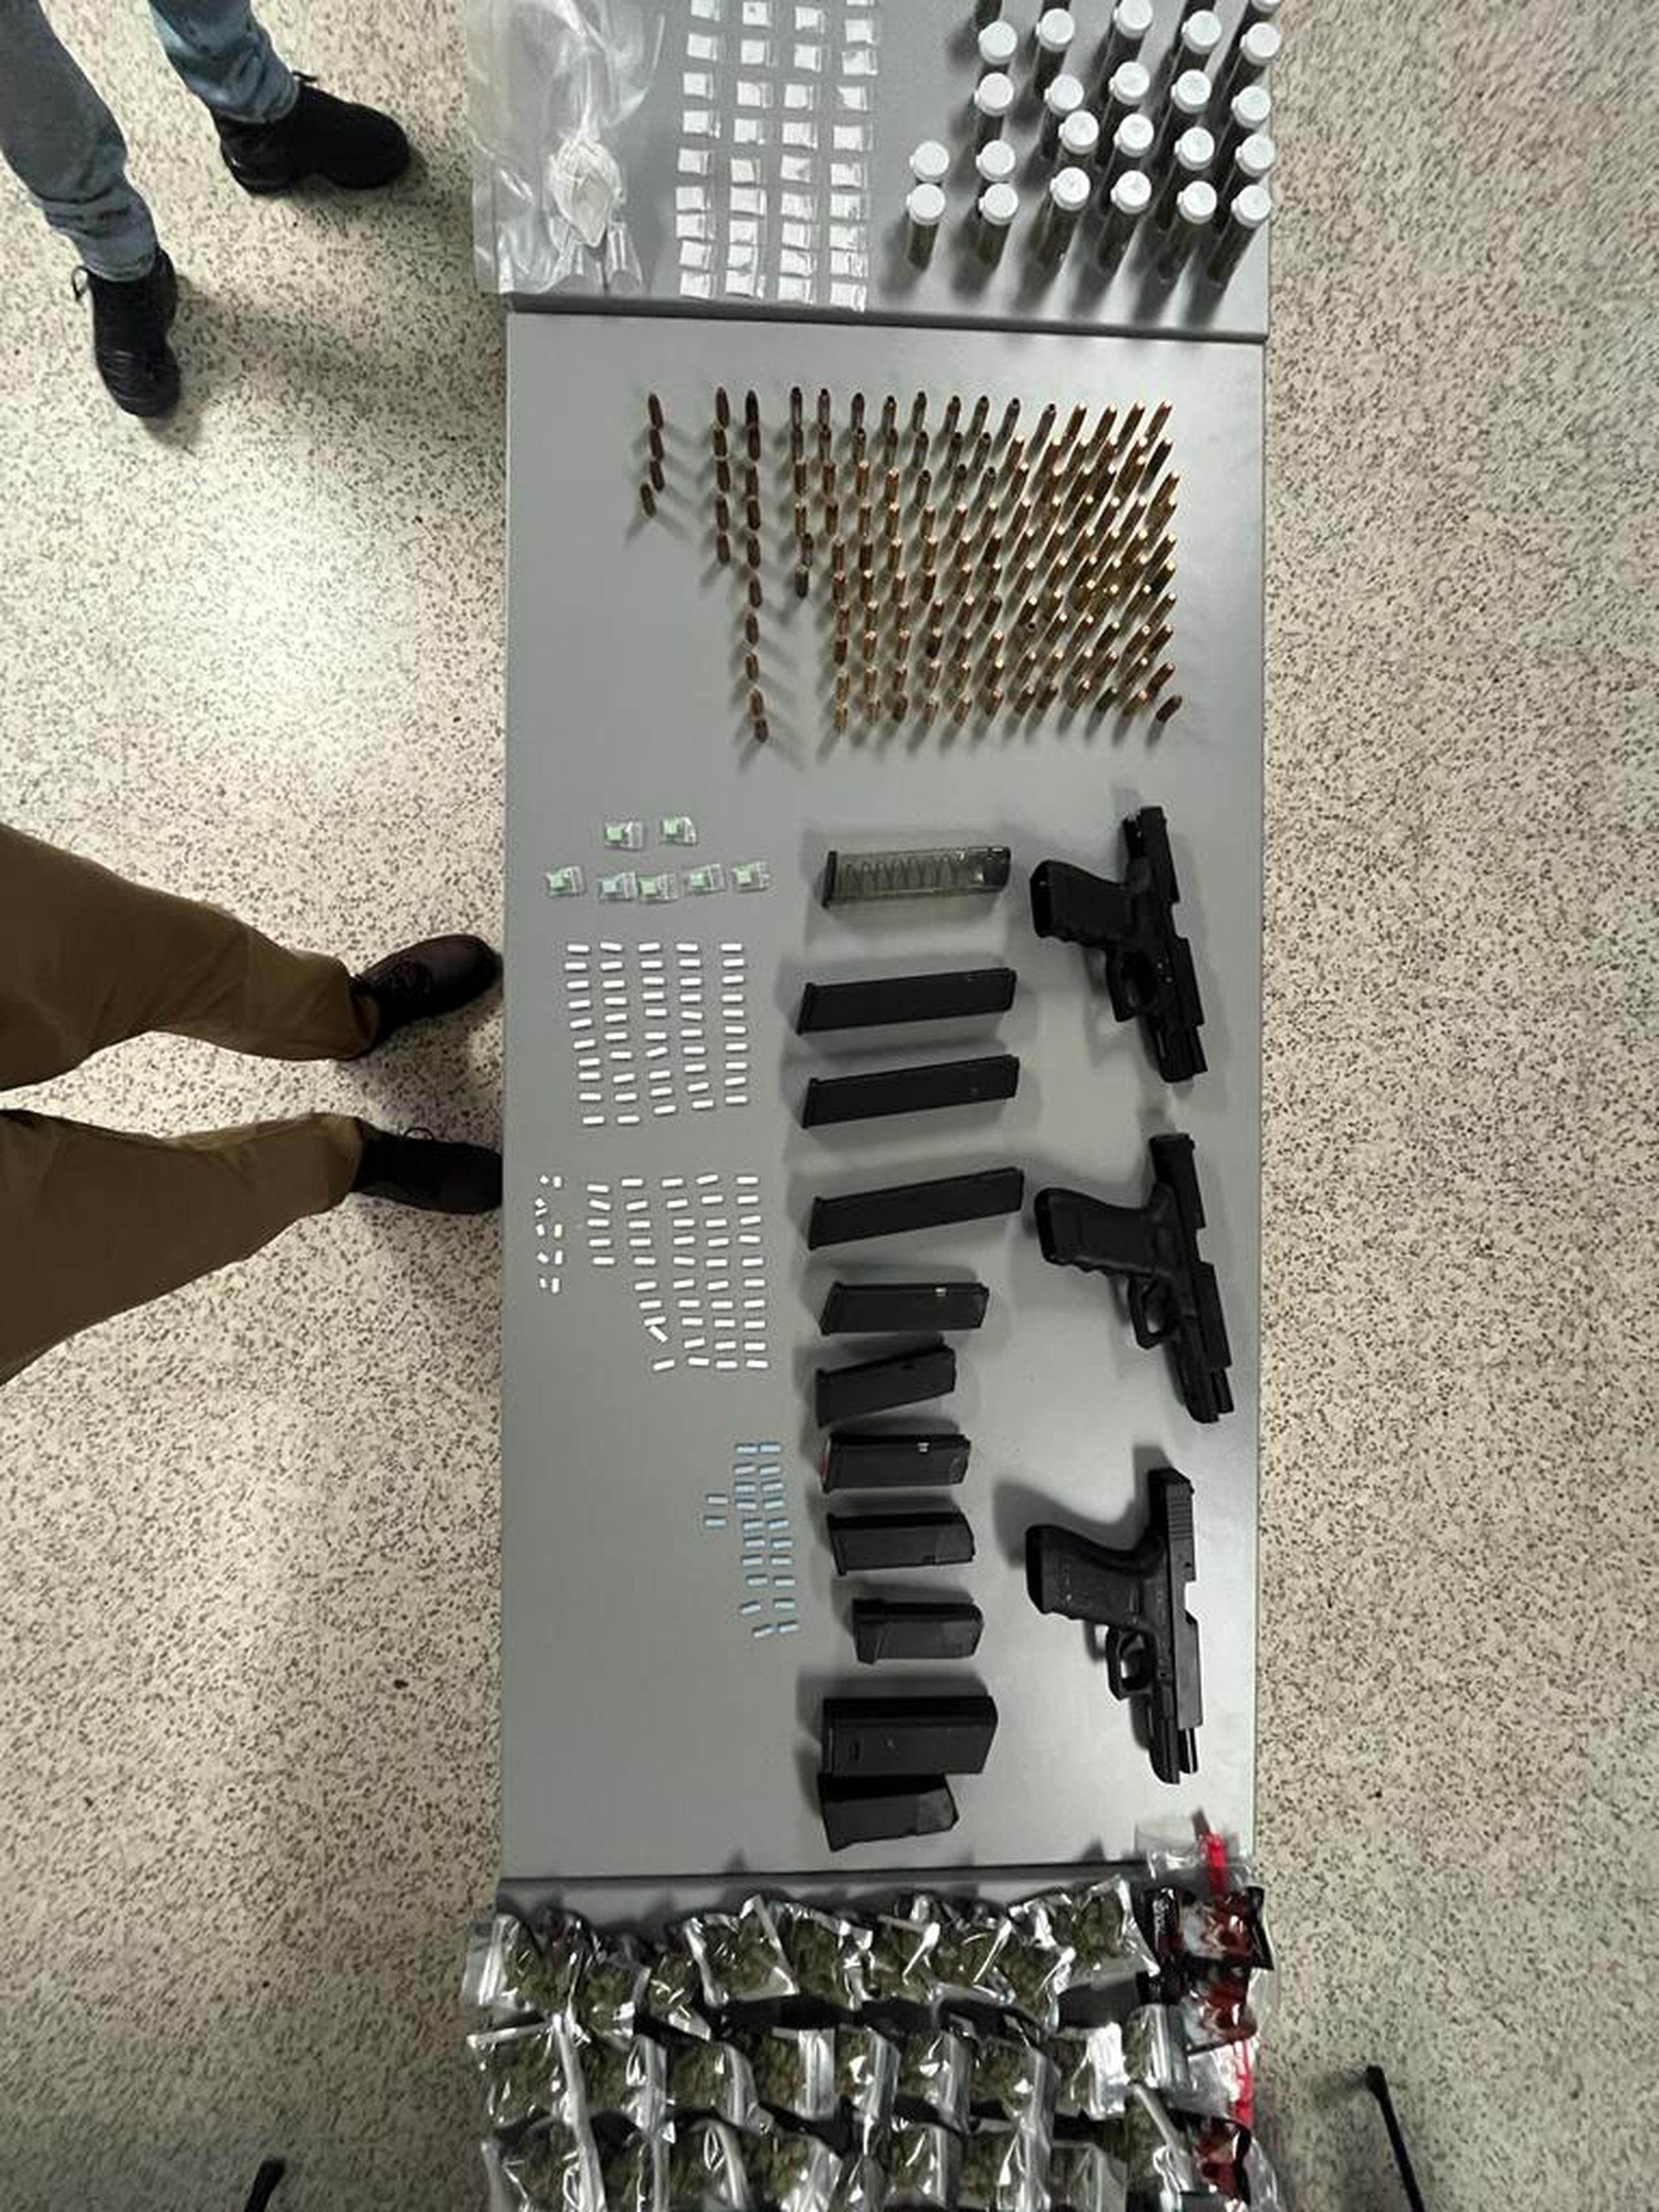 Las pistolas, cargadores y balas fueron ocupadas por agentes de la División de Drogas Metropolitana.